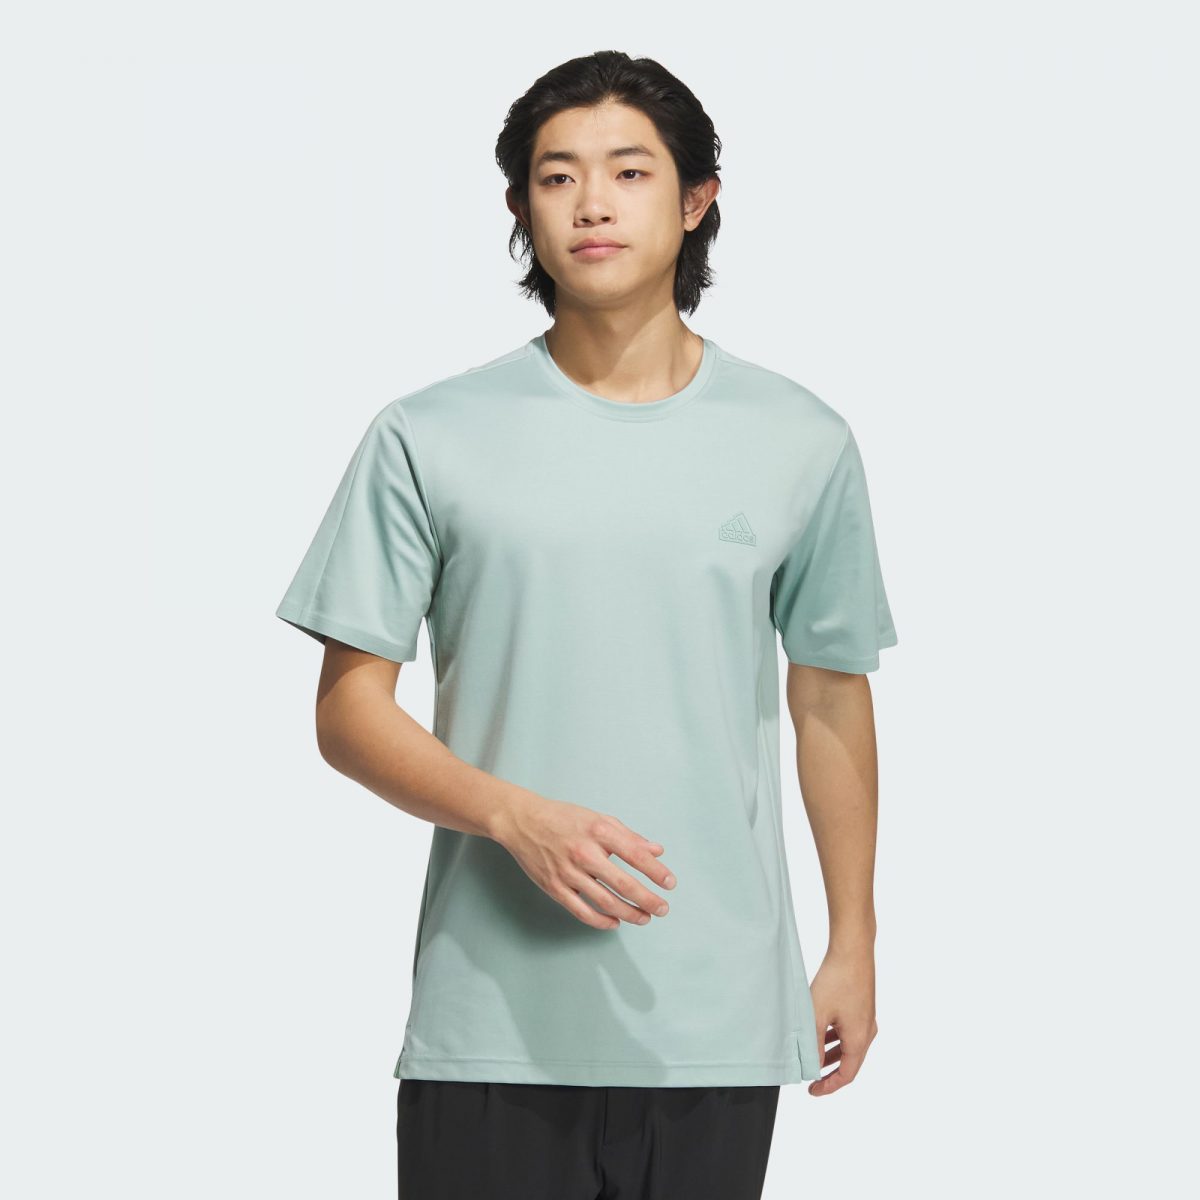 Мужская футболка adidas COOL FEELING SHORT SLEEVE T-SHIRT зеленая фото